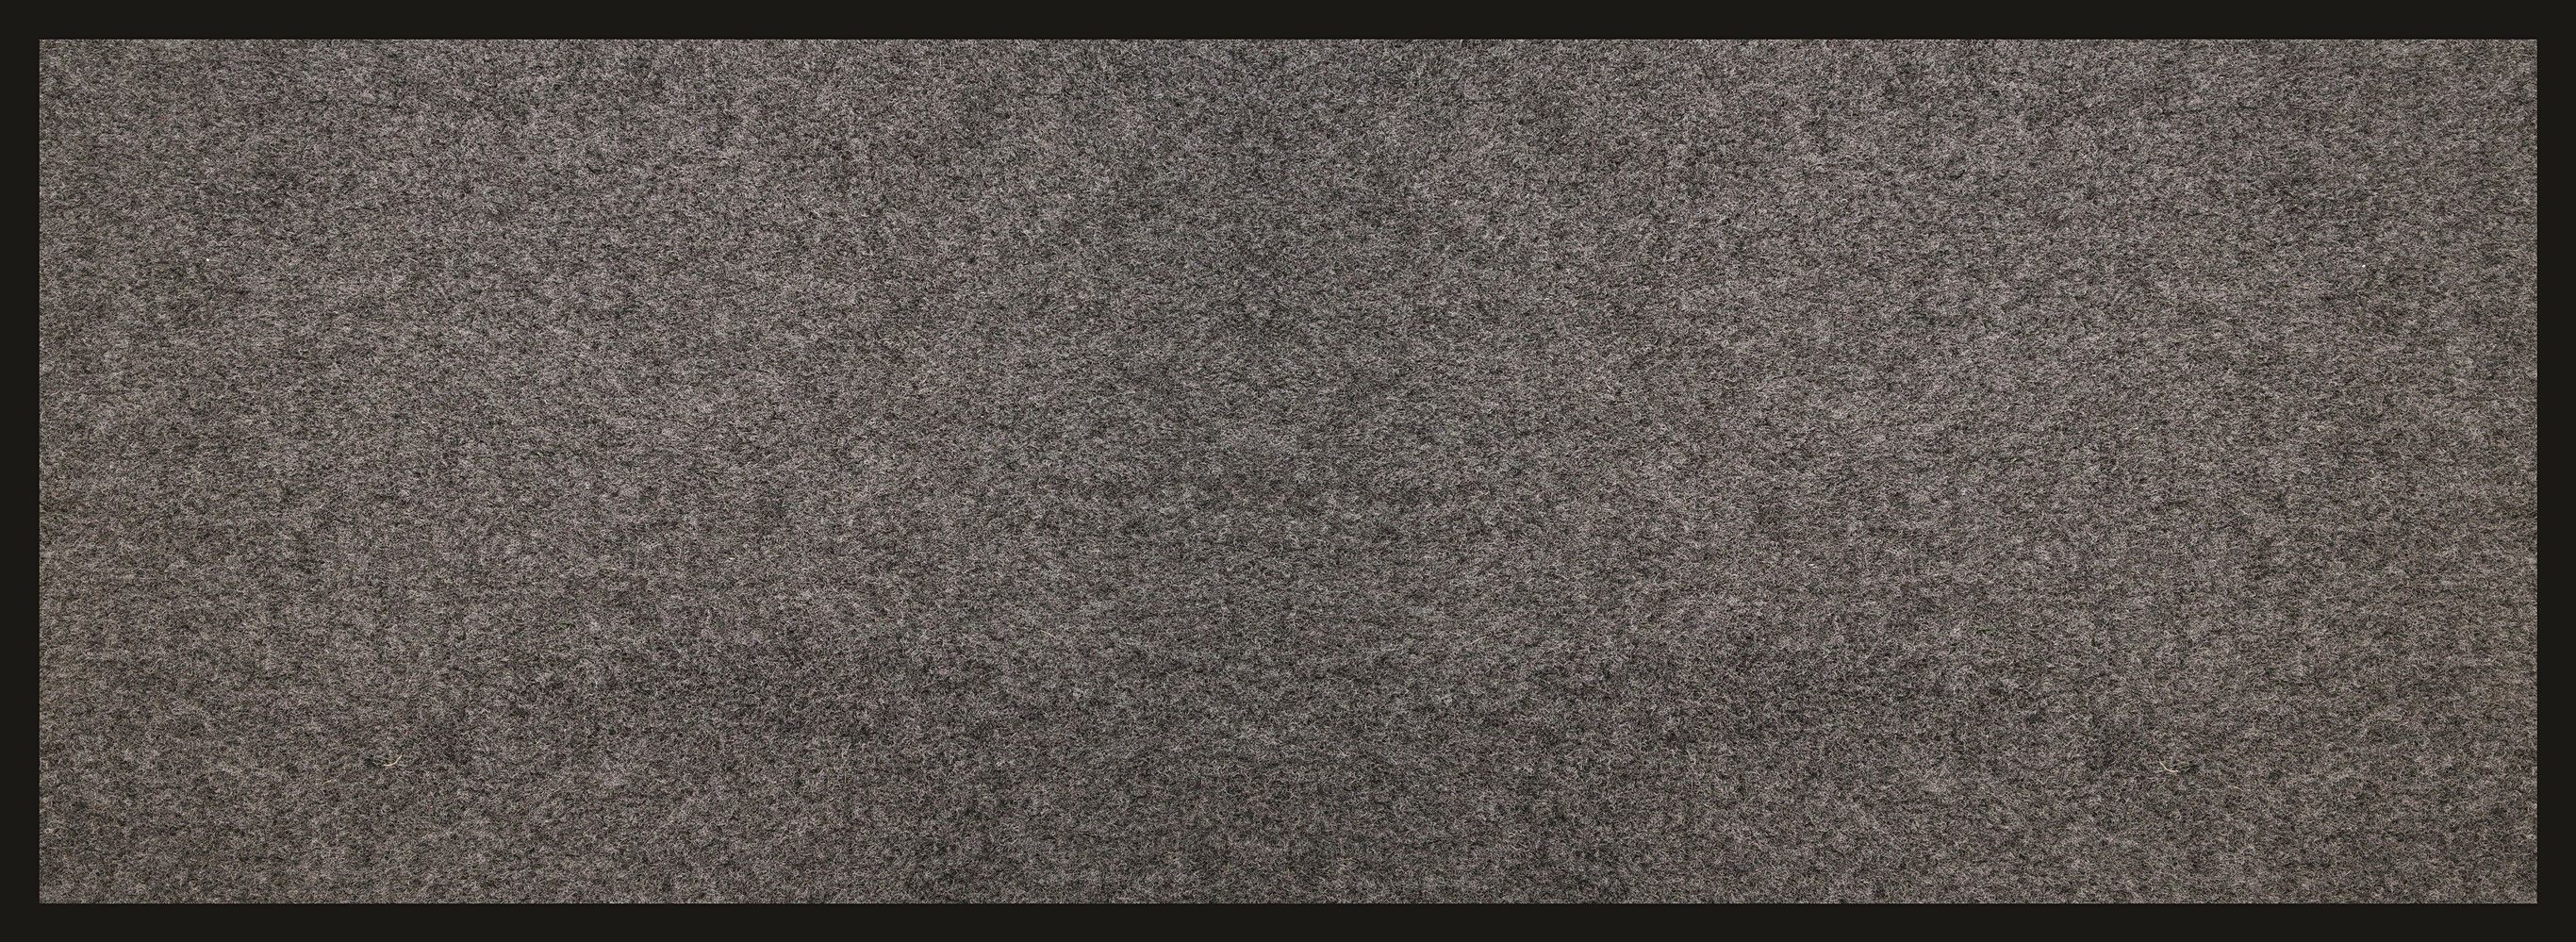 Tapis absorbant prima gris foncé 60x160cm